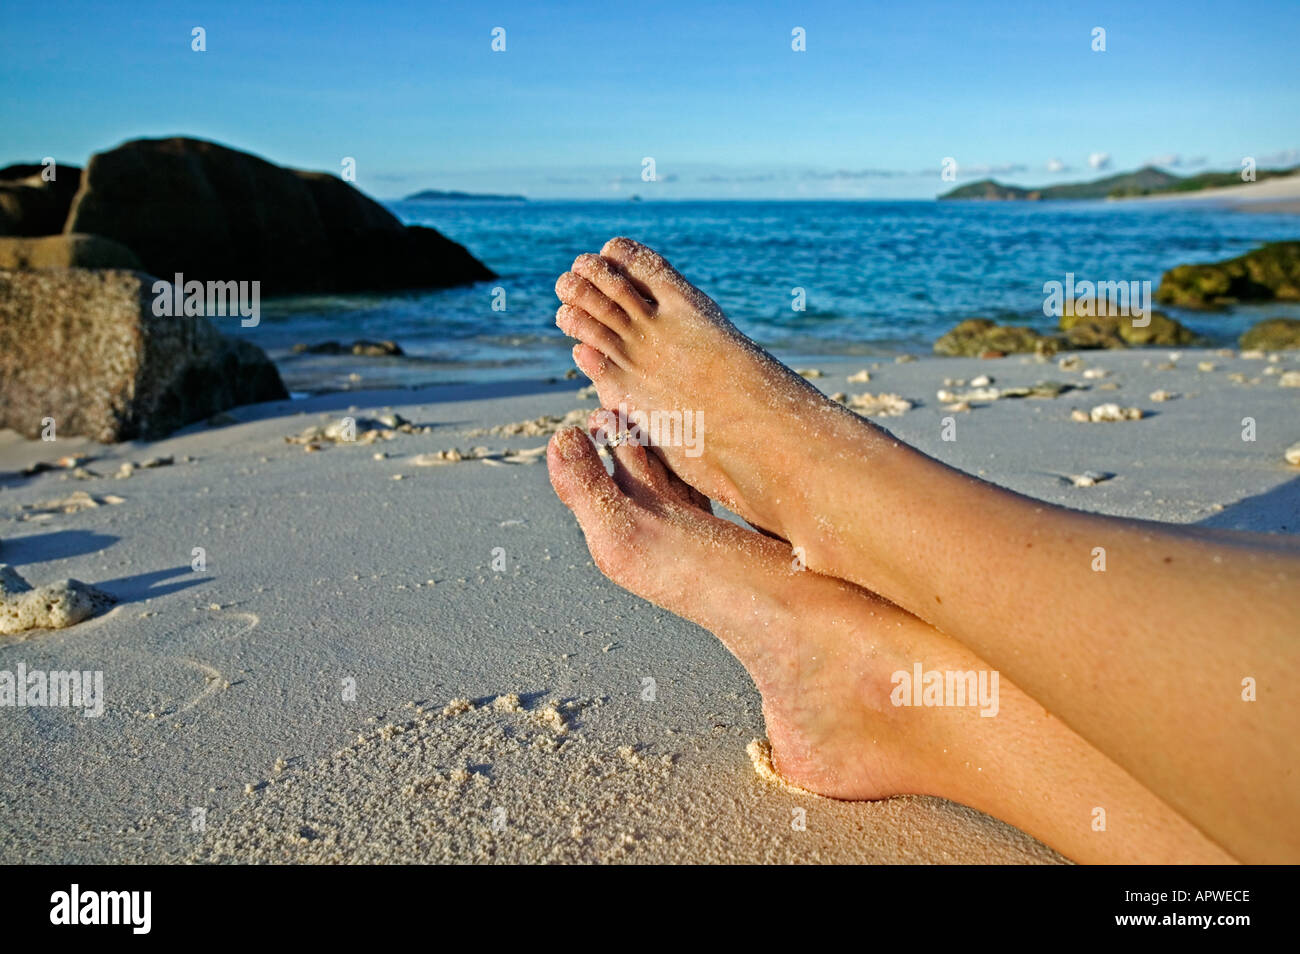 Les jambes de woman relaxing on beach parution Modèle Seychelles Cousine Island Banque D'Images